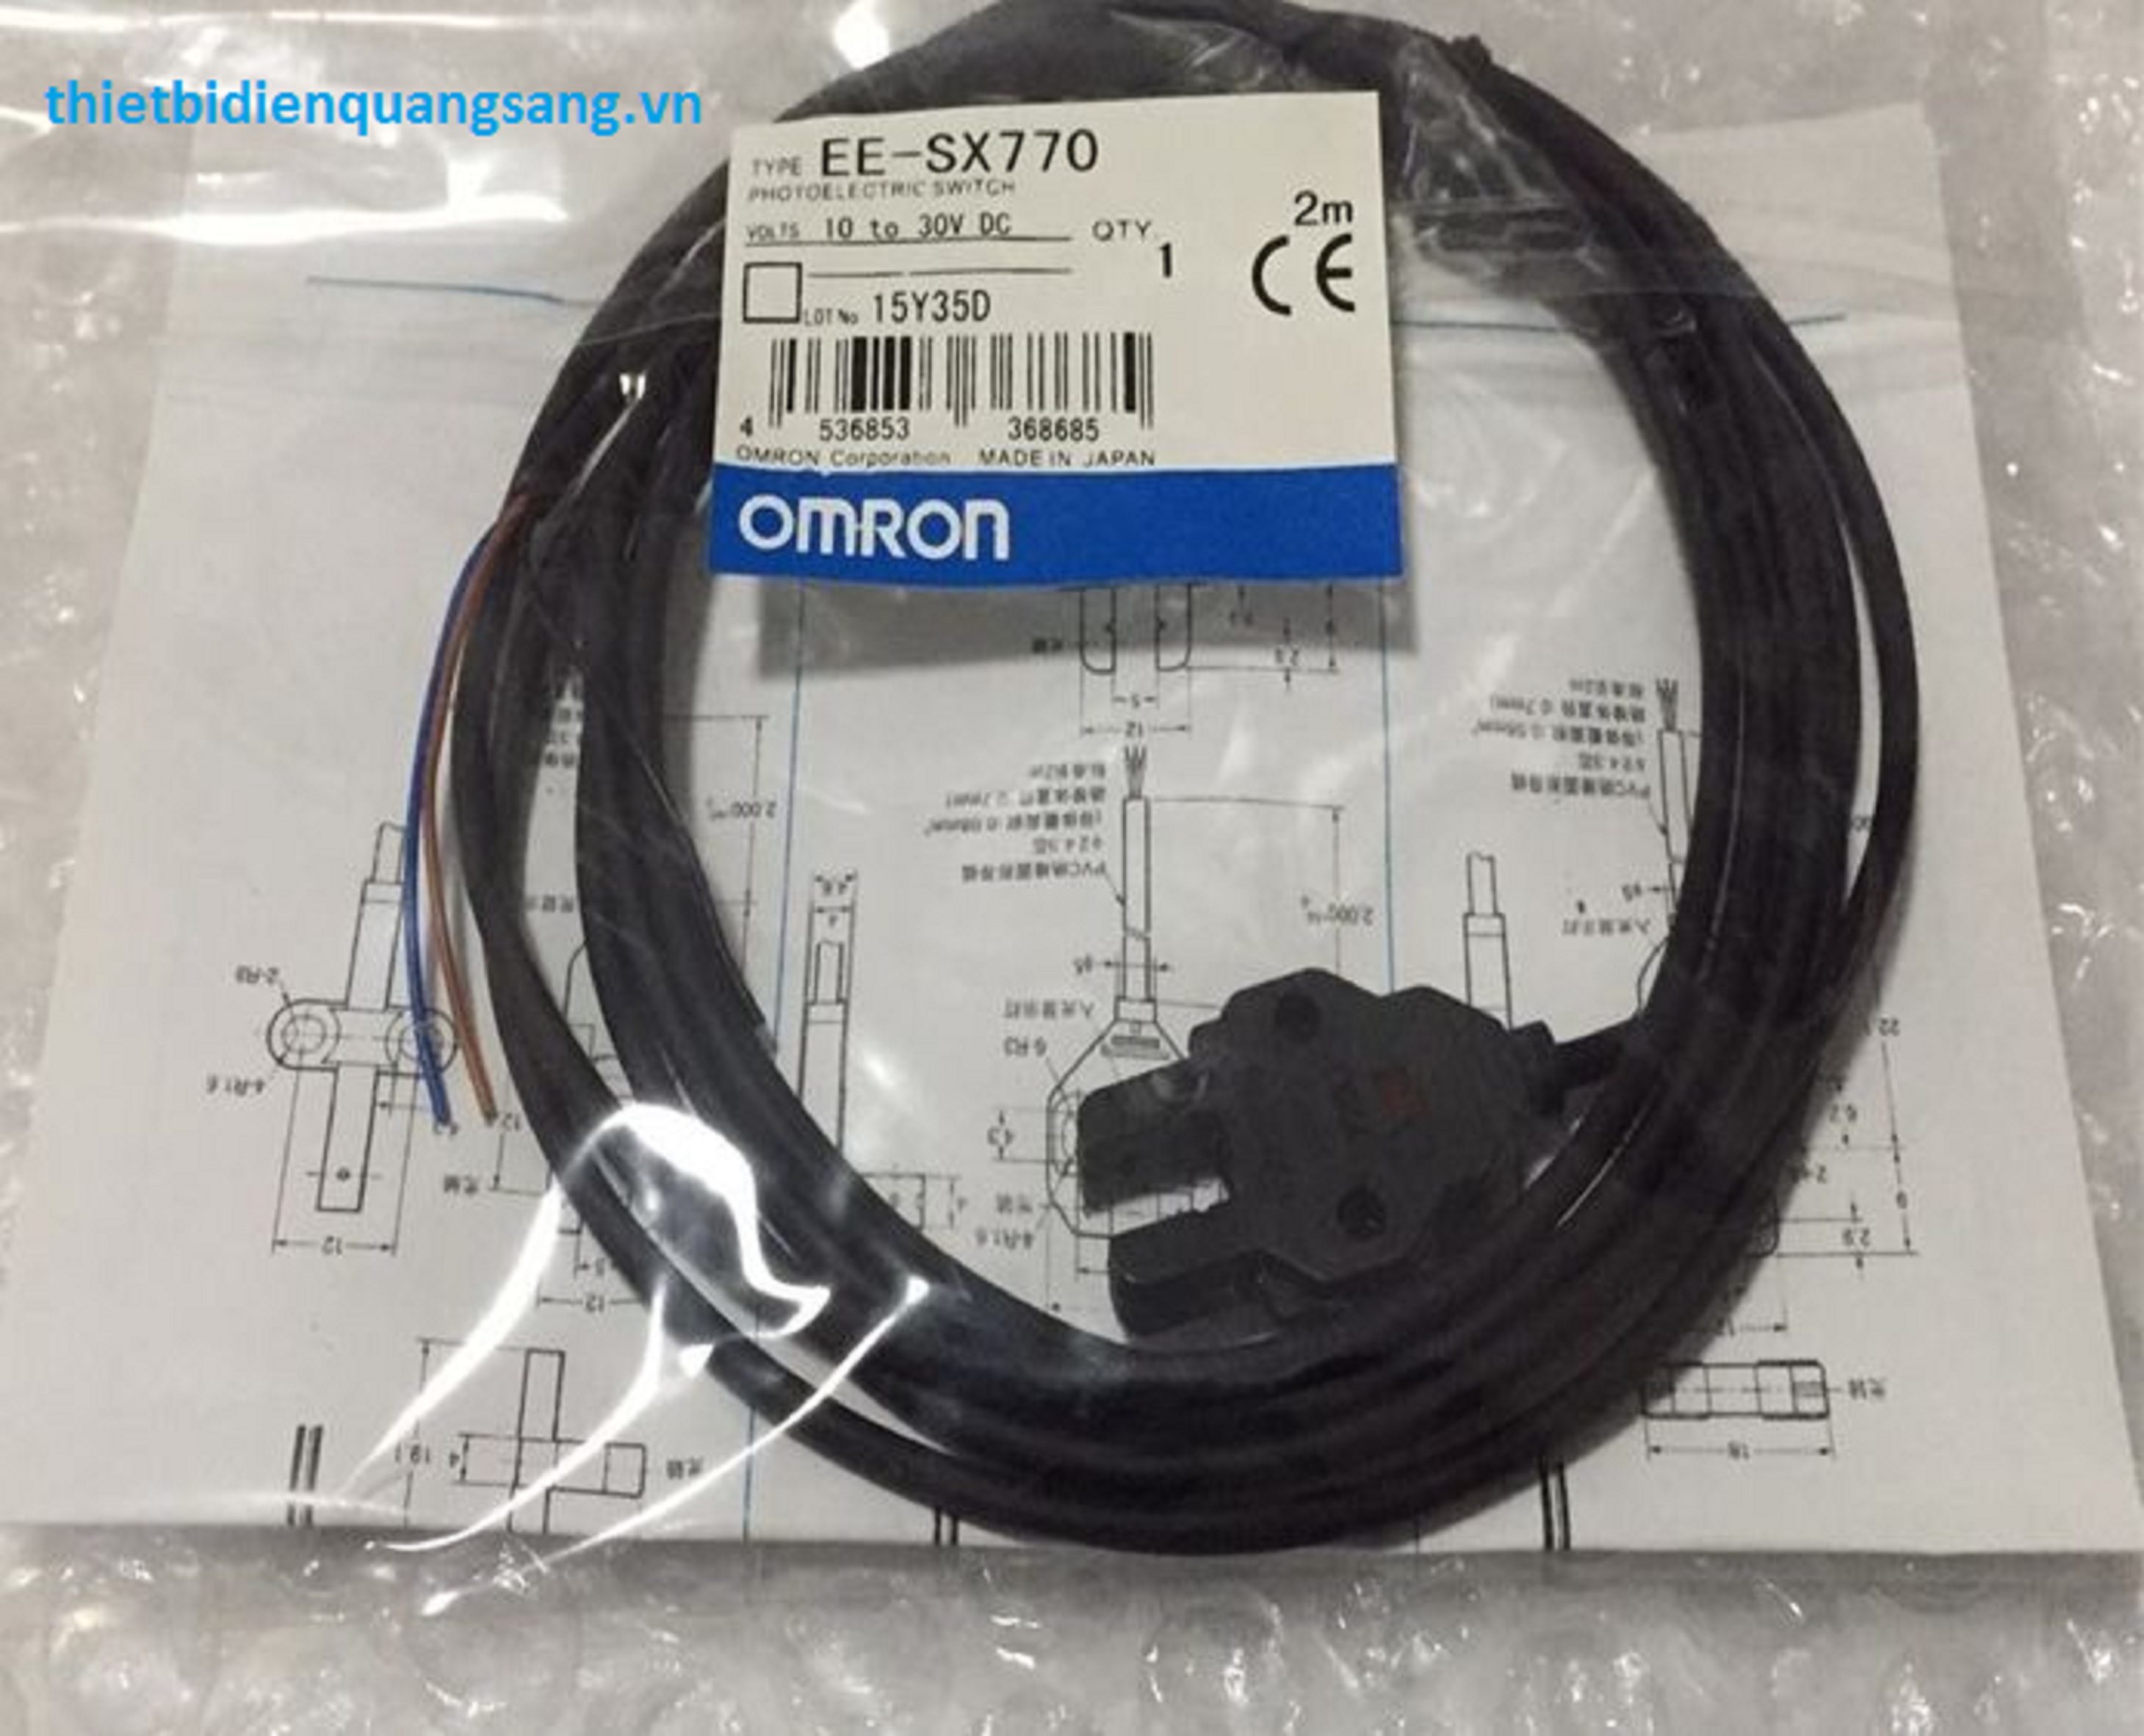 Omron EE-SX770